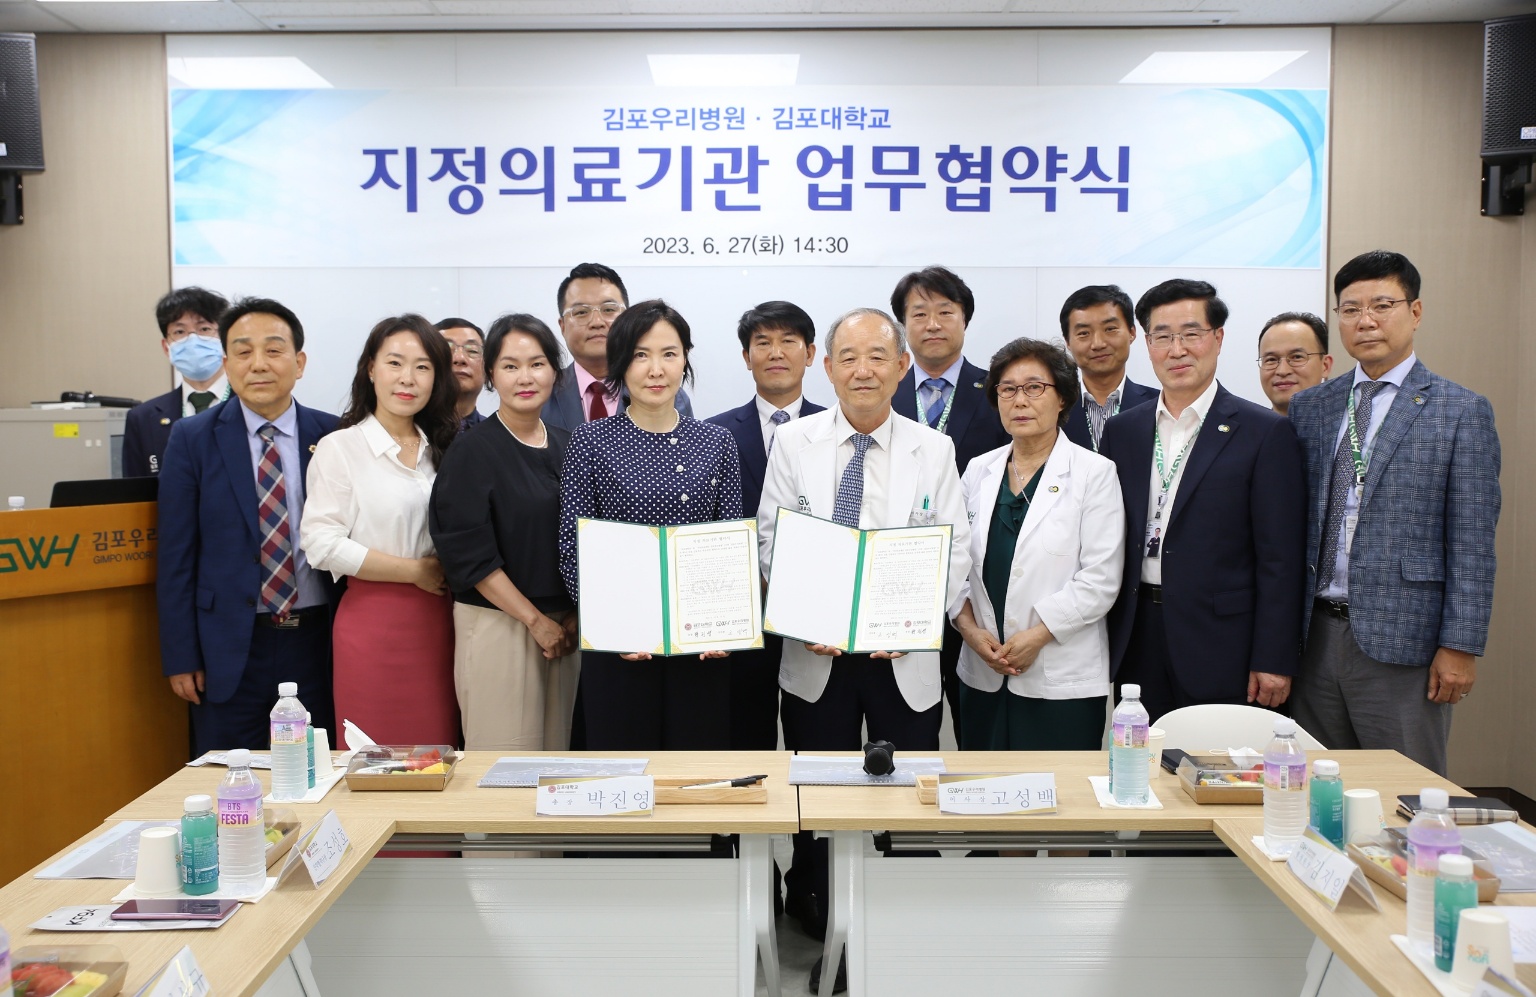 김포대, 보건의료계열 전문인력 양성 및 지역 의료사업 협력 위해 김포우리병원과 MOU 체결